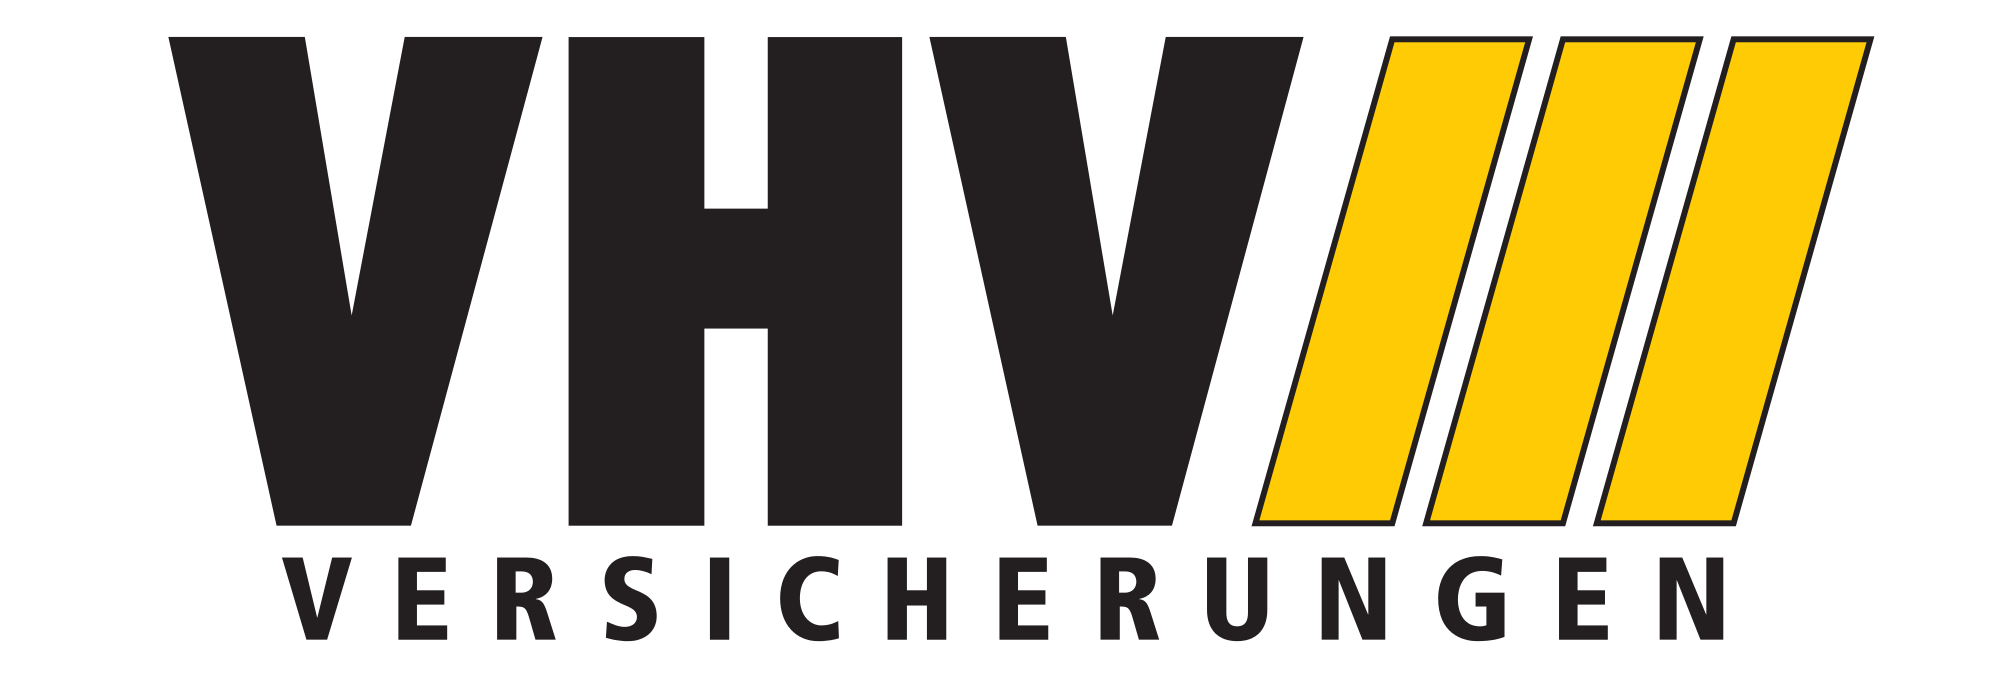 VHV Logo